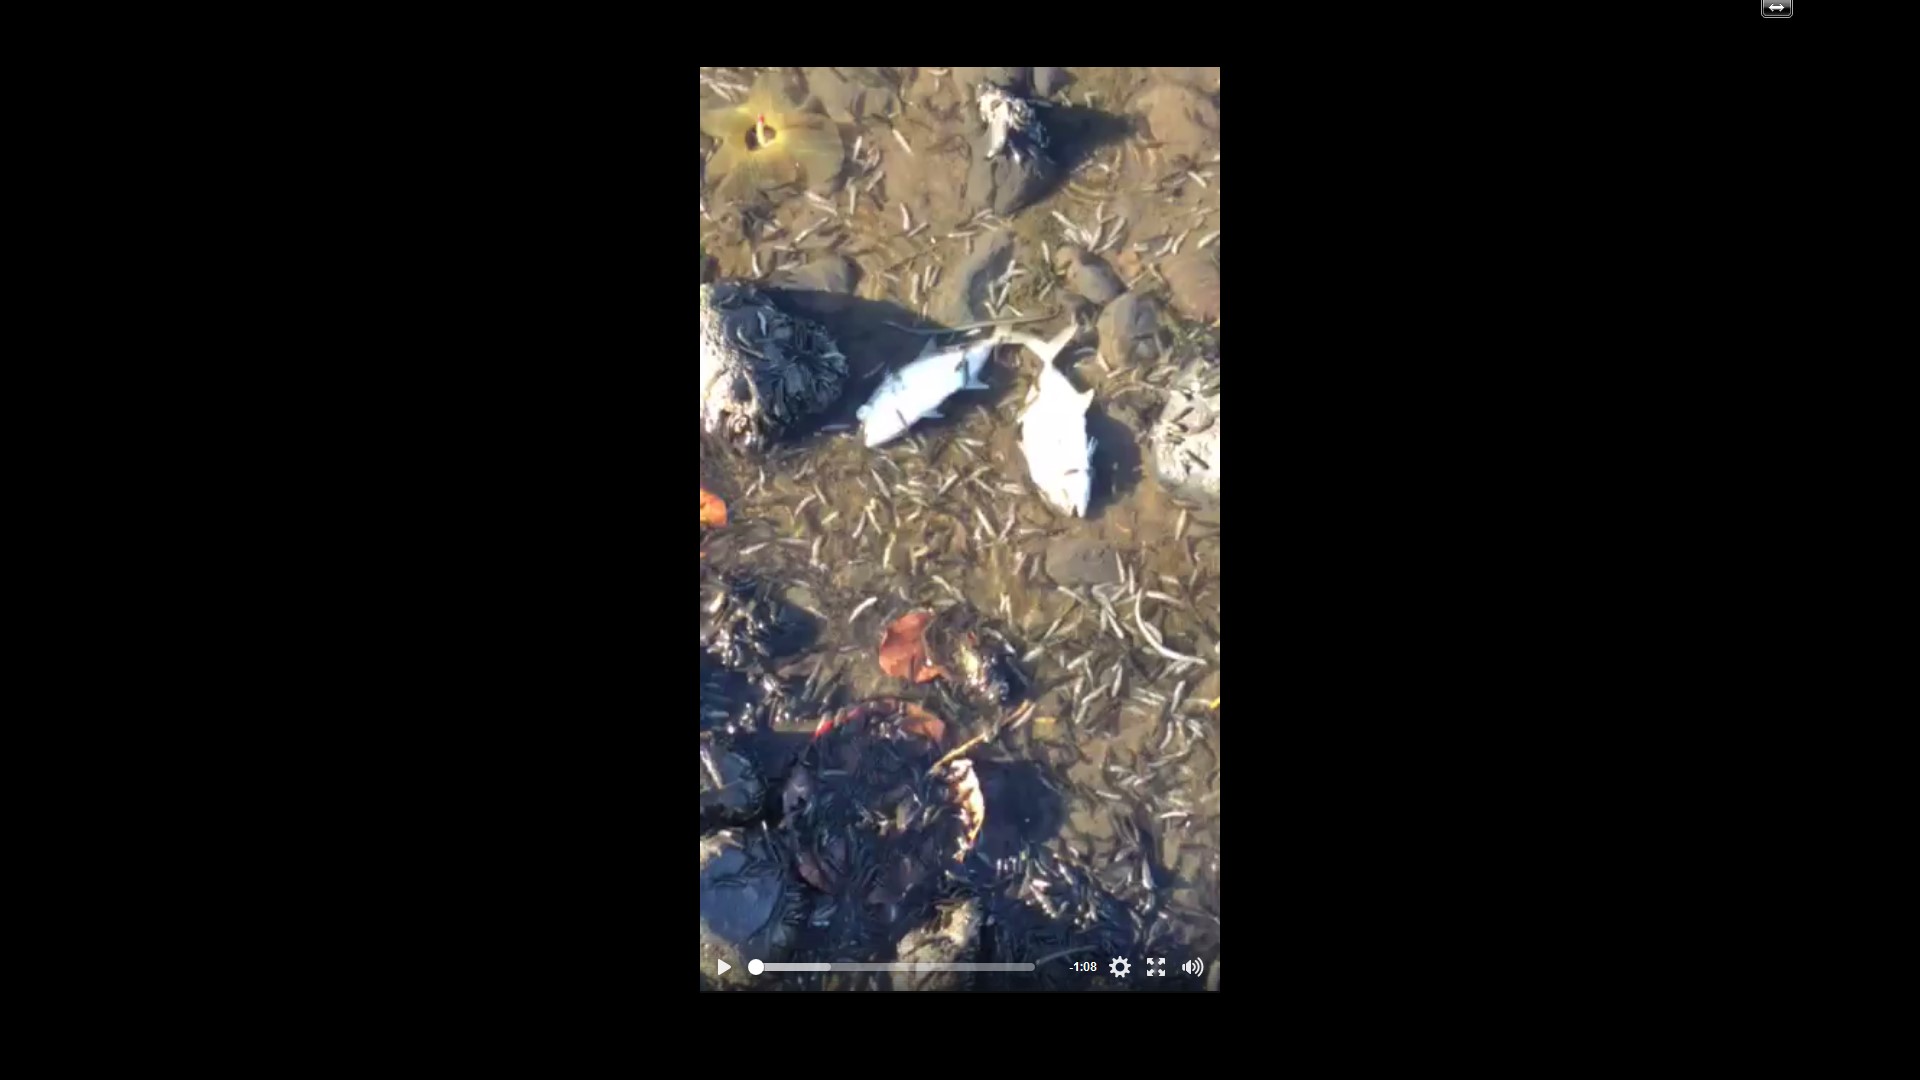 À Punaruu, d'autres poissons morts y ont été découverts ce mardi. La raison serait la même qu'à Mahina. (Capture d'écran d'une vidéo postée sur facebook).